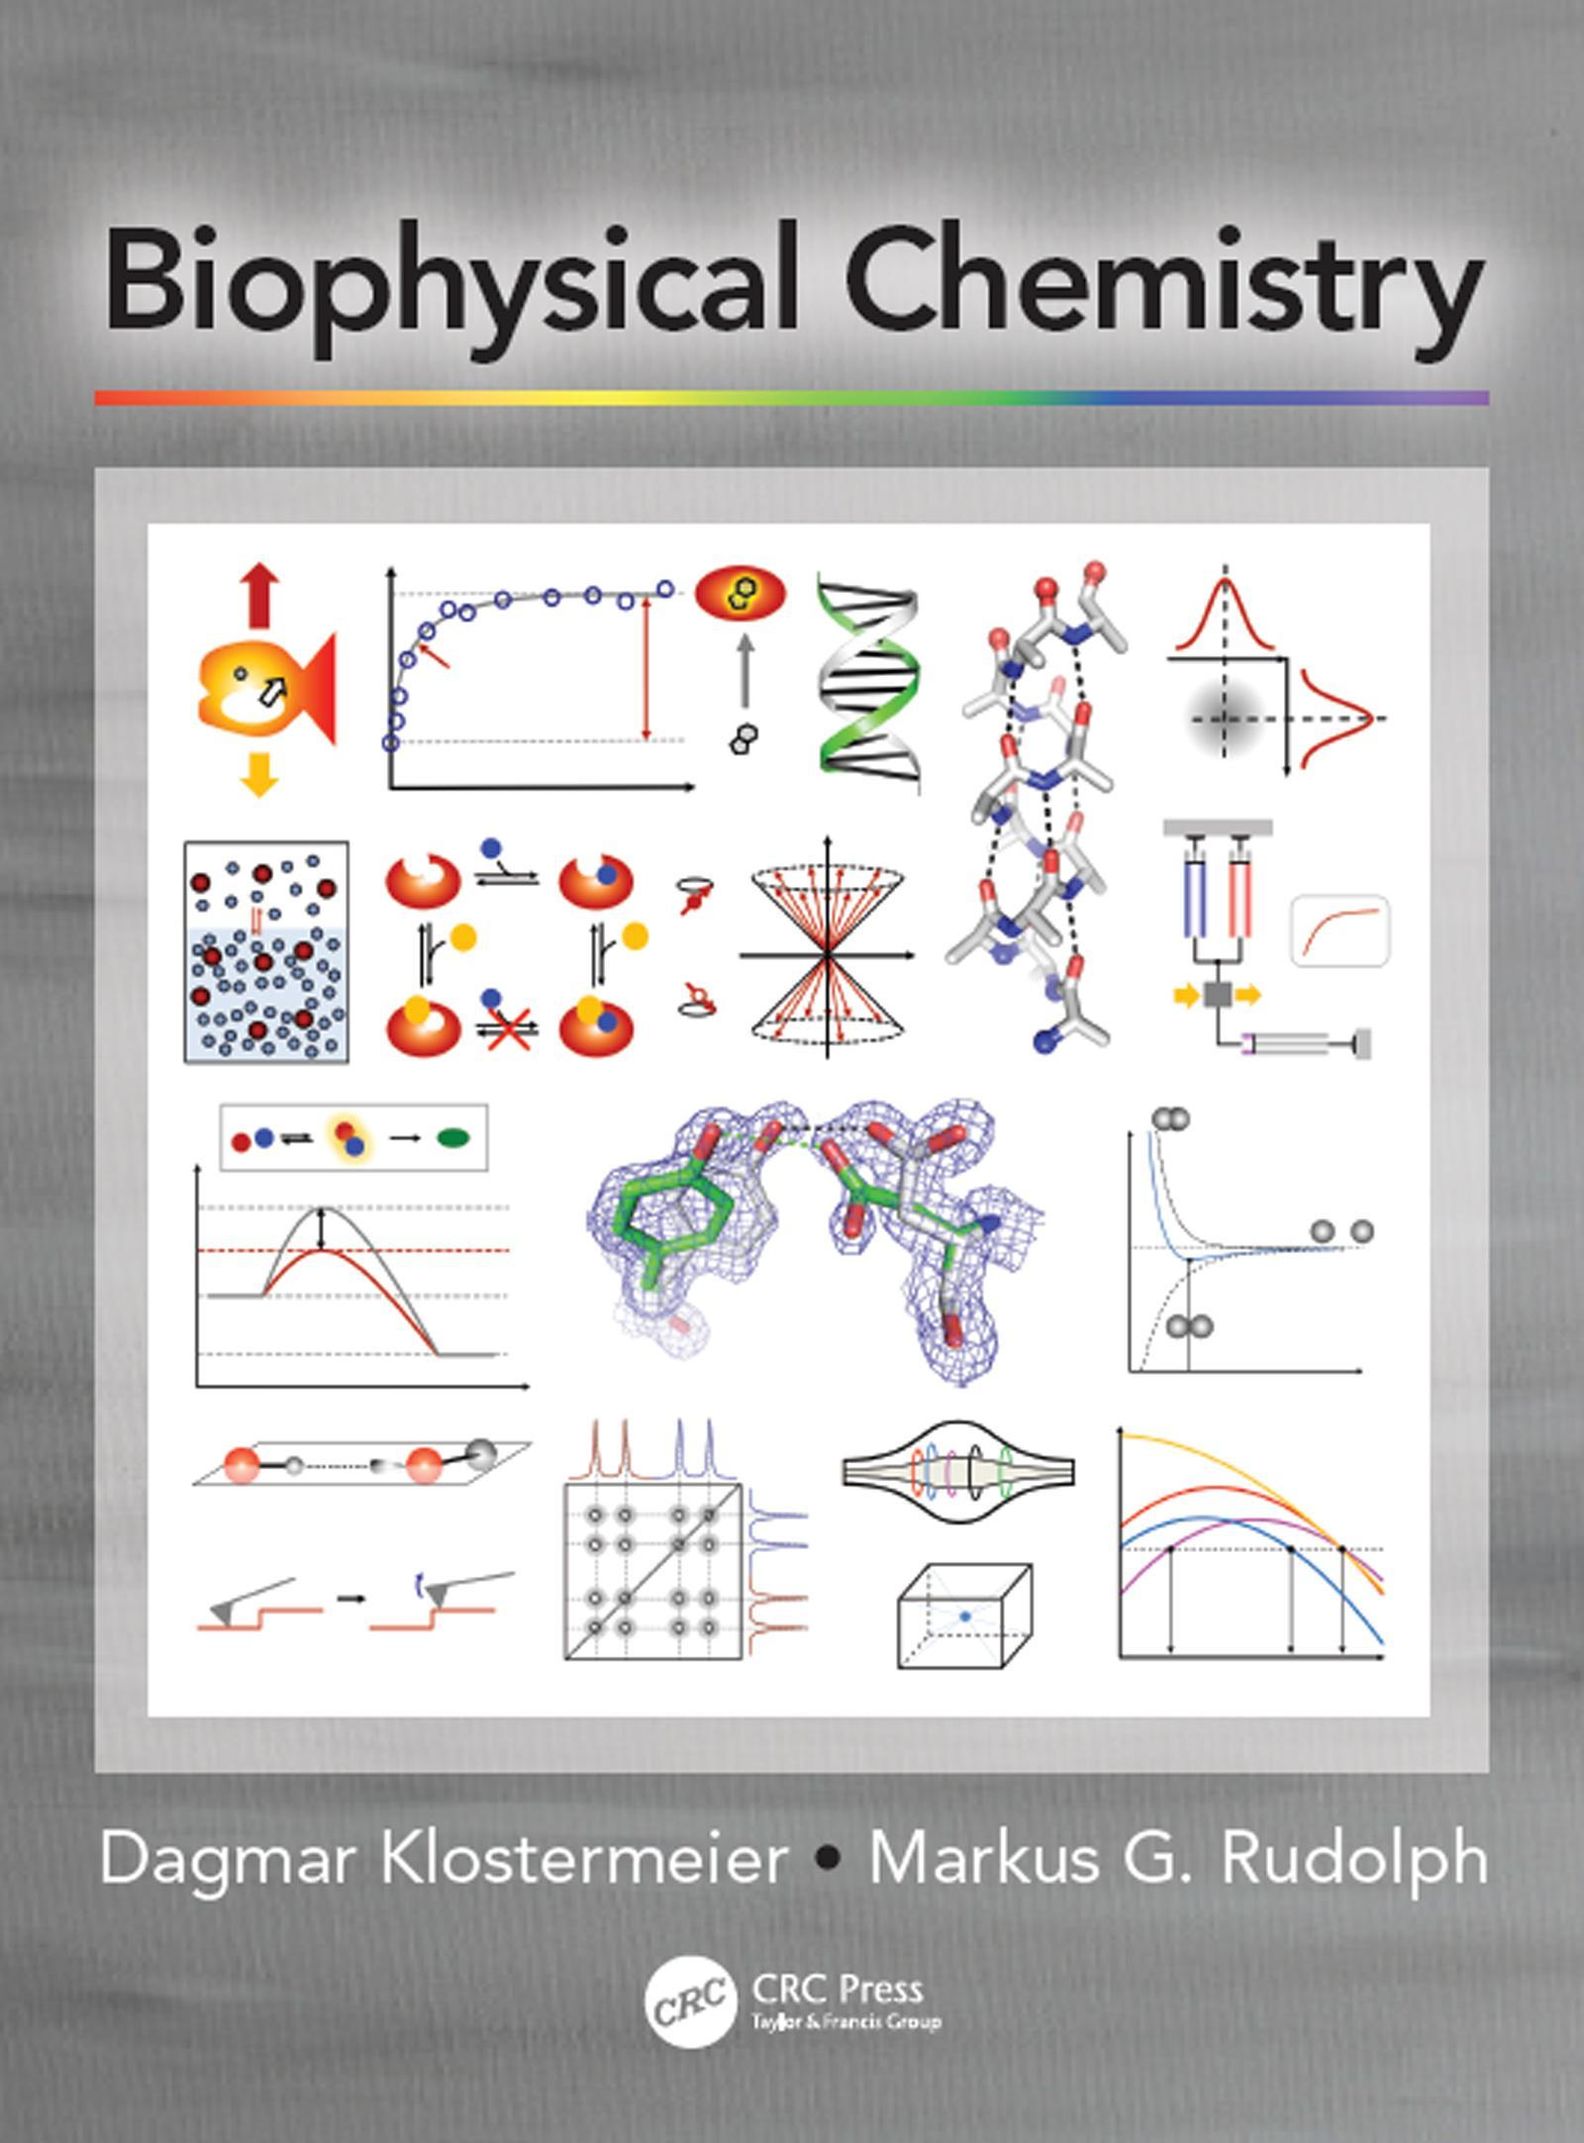 Biophysical Chemistry: ebook jetzt bei Weltbild.ch als Download